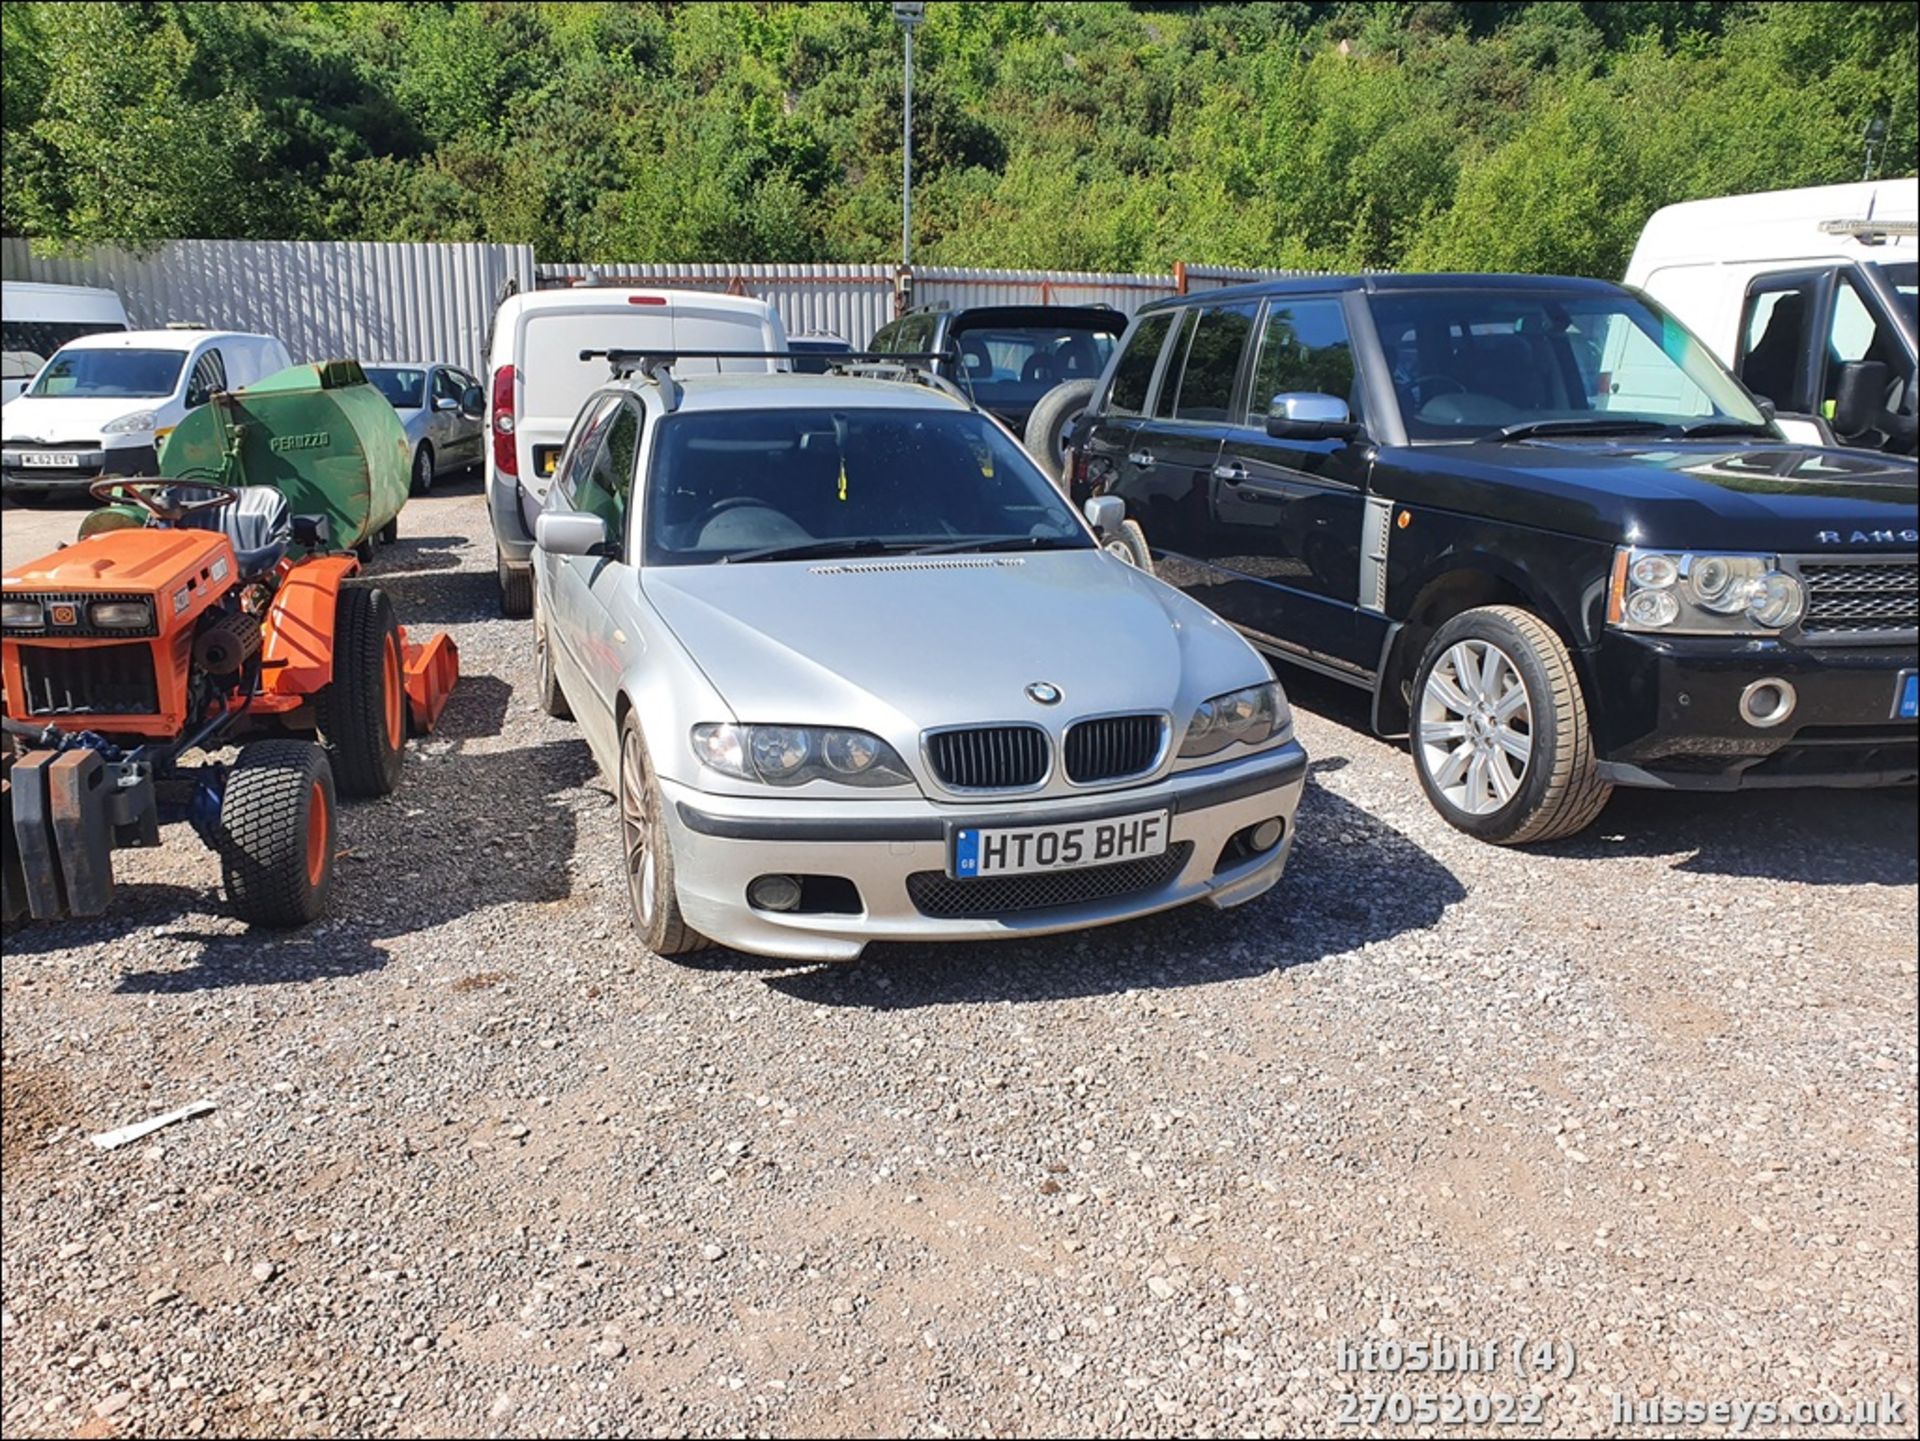 05/05 BMW 320D SPORT AUTO - 1995cc 5dr Estate (Silver, 174k) - Image 4 of 21